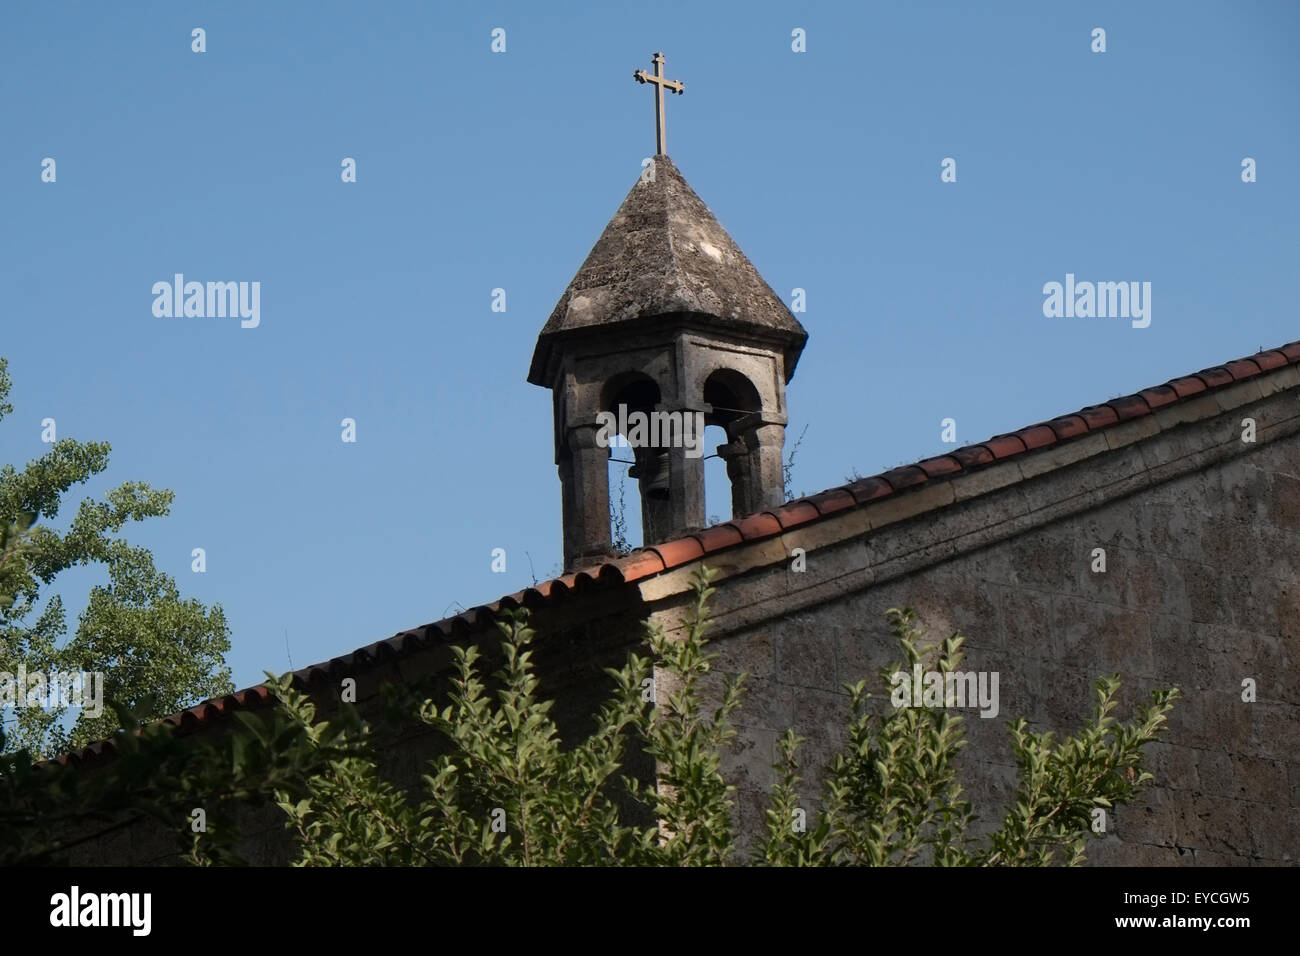 Clocher de l'Chotari Cotari ou église dans la ville de Nik, Azerbaïdjan Banque D'Images